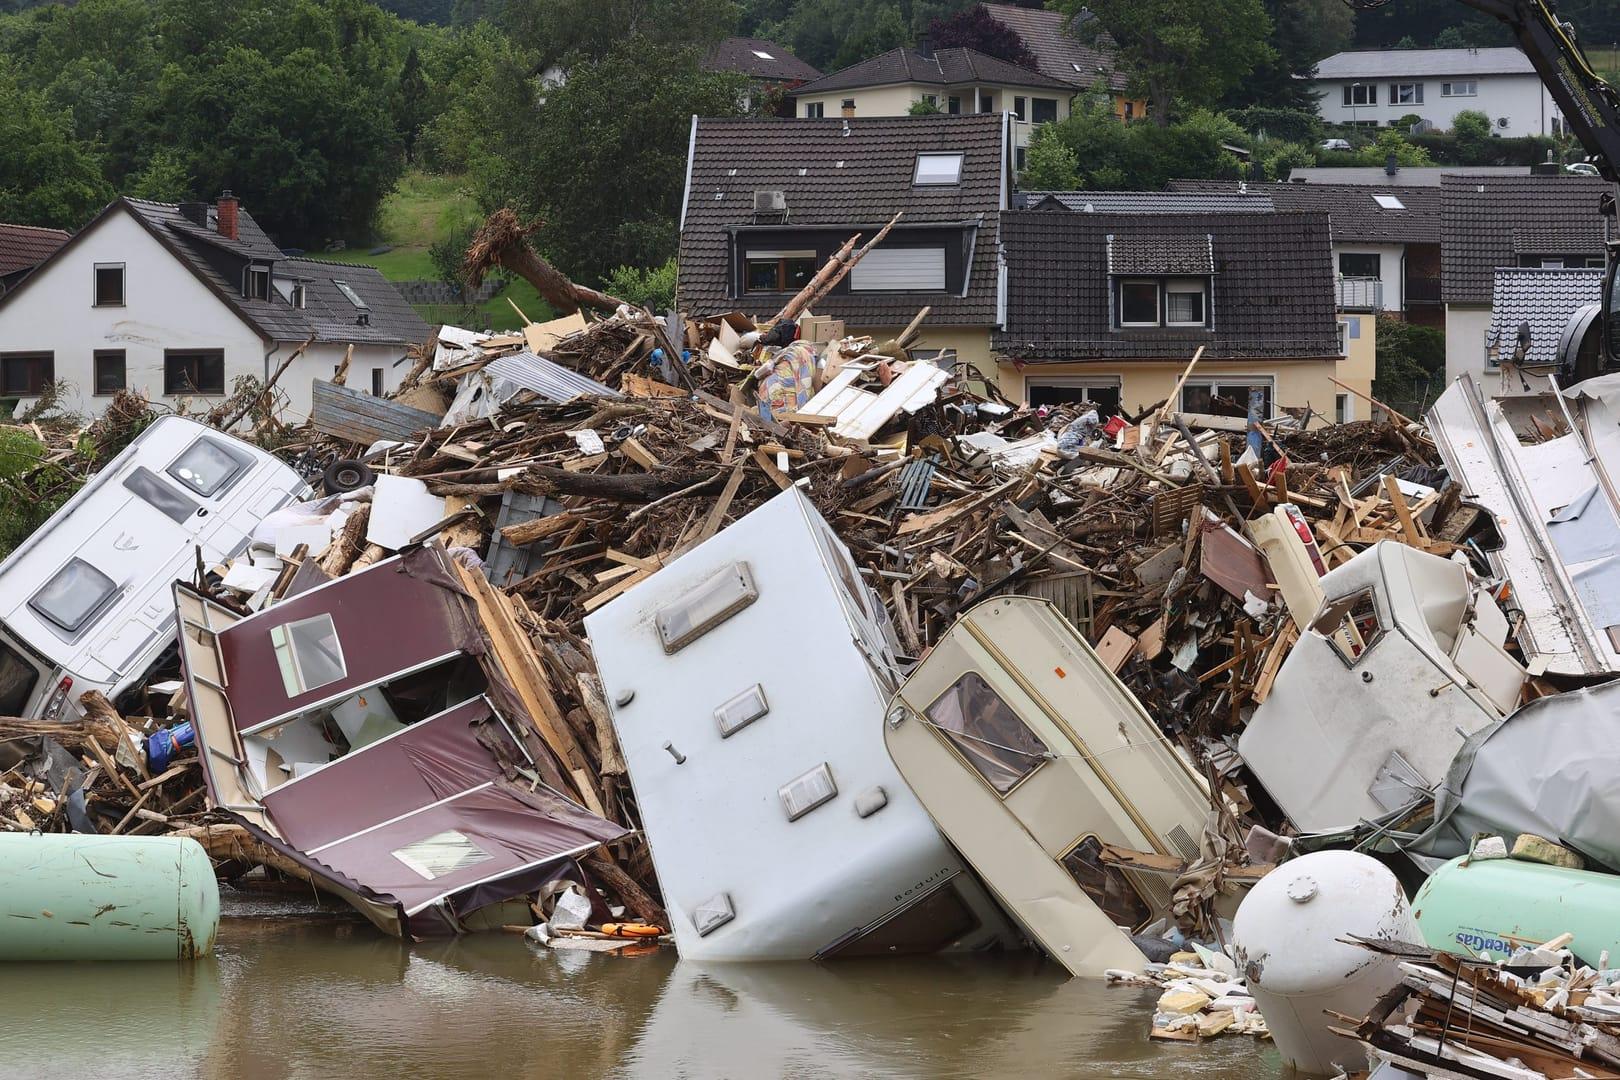 German churches pray, provide aid as European flooding death toll climbs